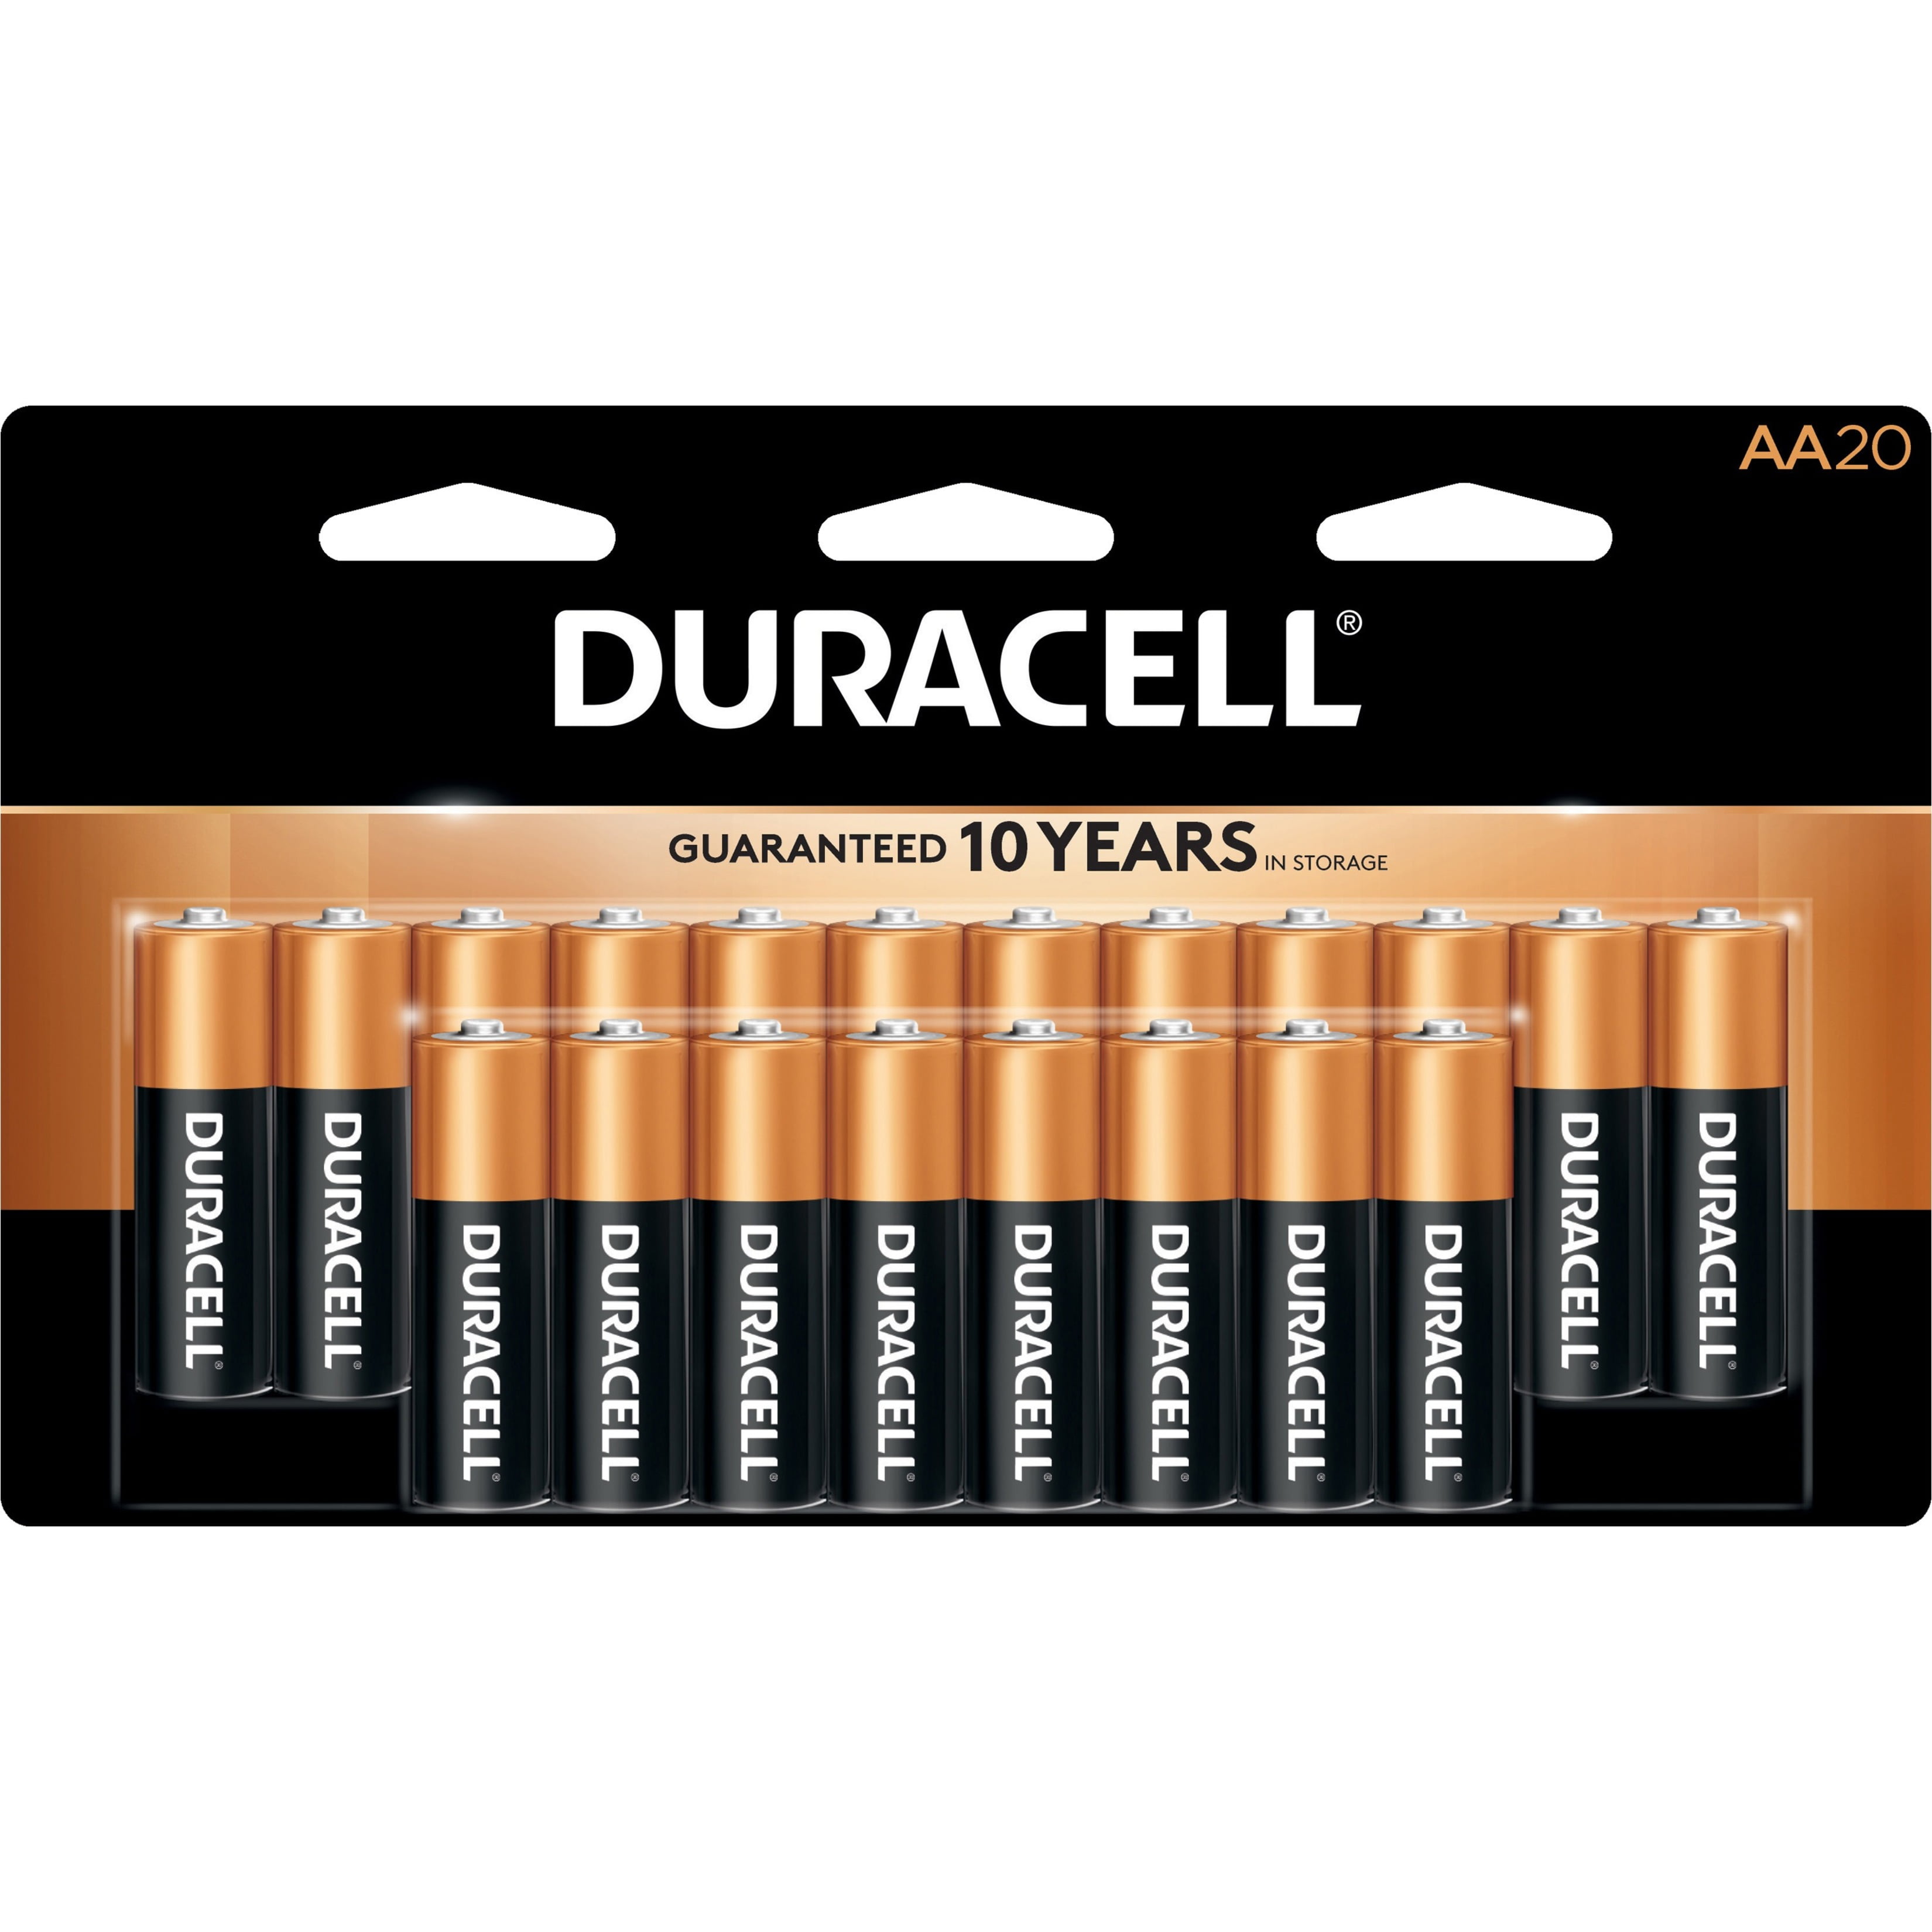 Duracell Batteries AA/AAA/C/D/9V Alkaline Duralock Coppertop Batteries 